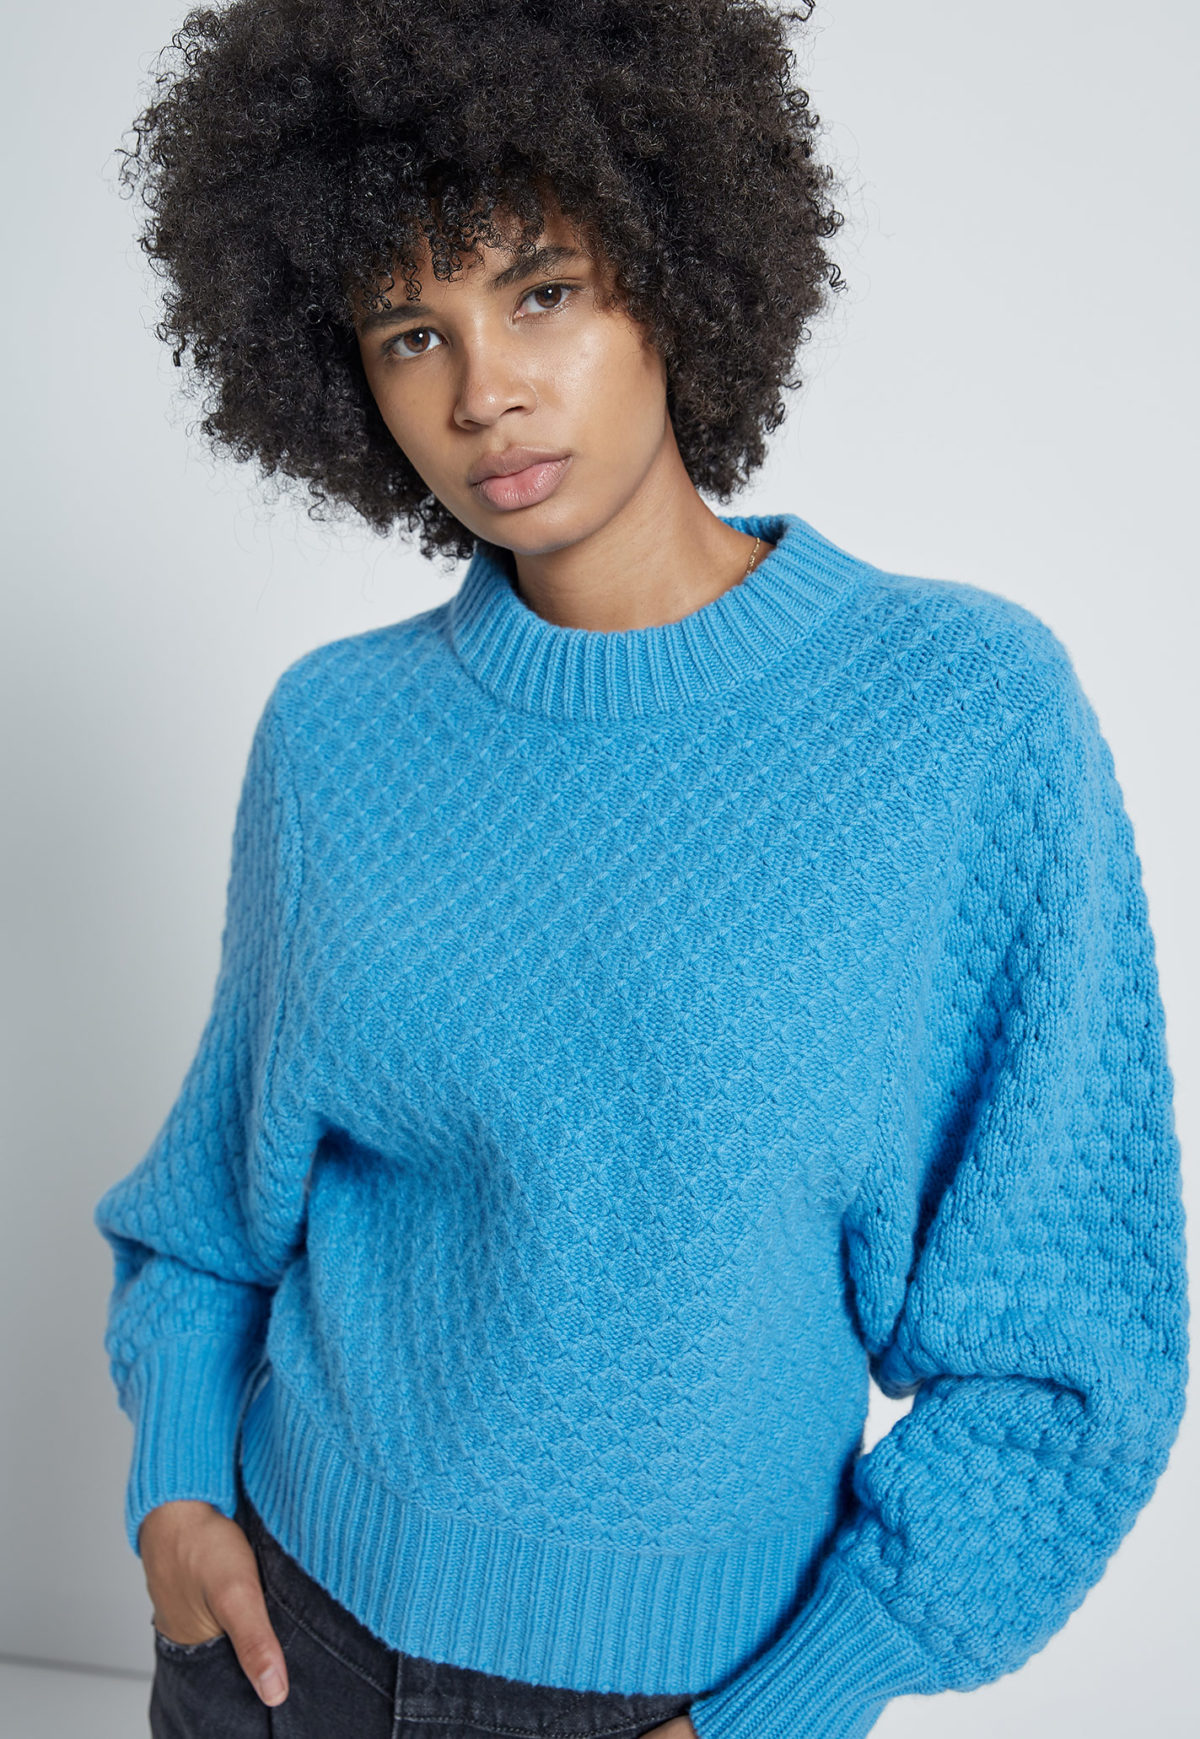 An aqua blue knit sweater